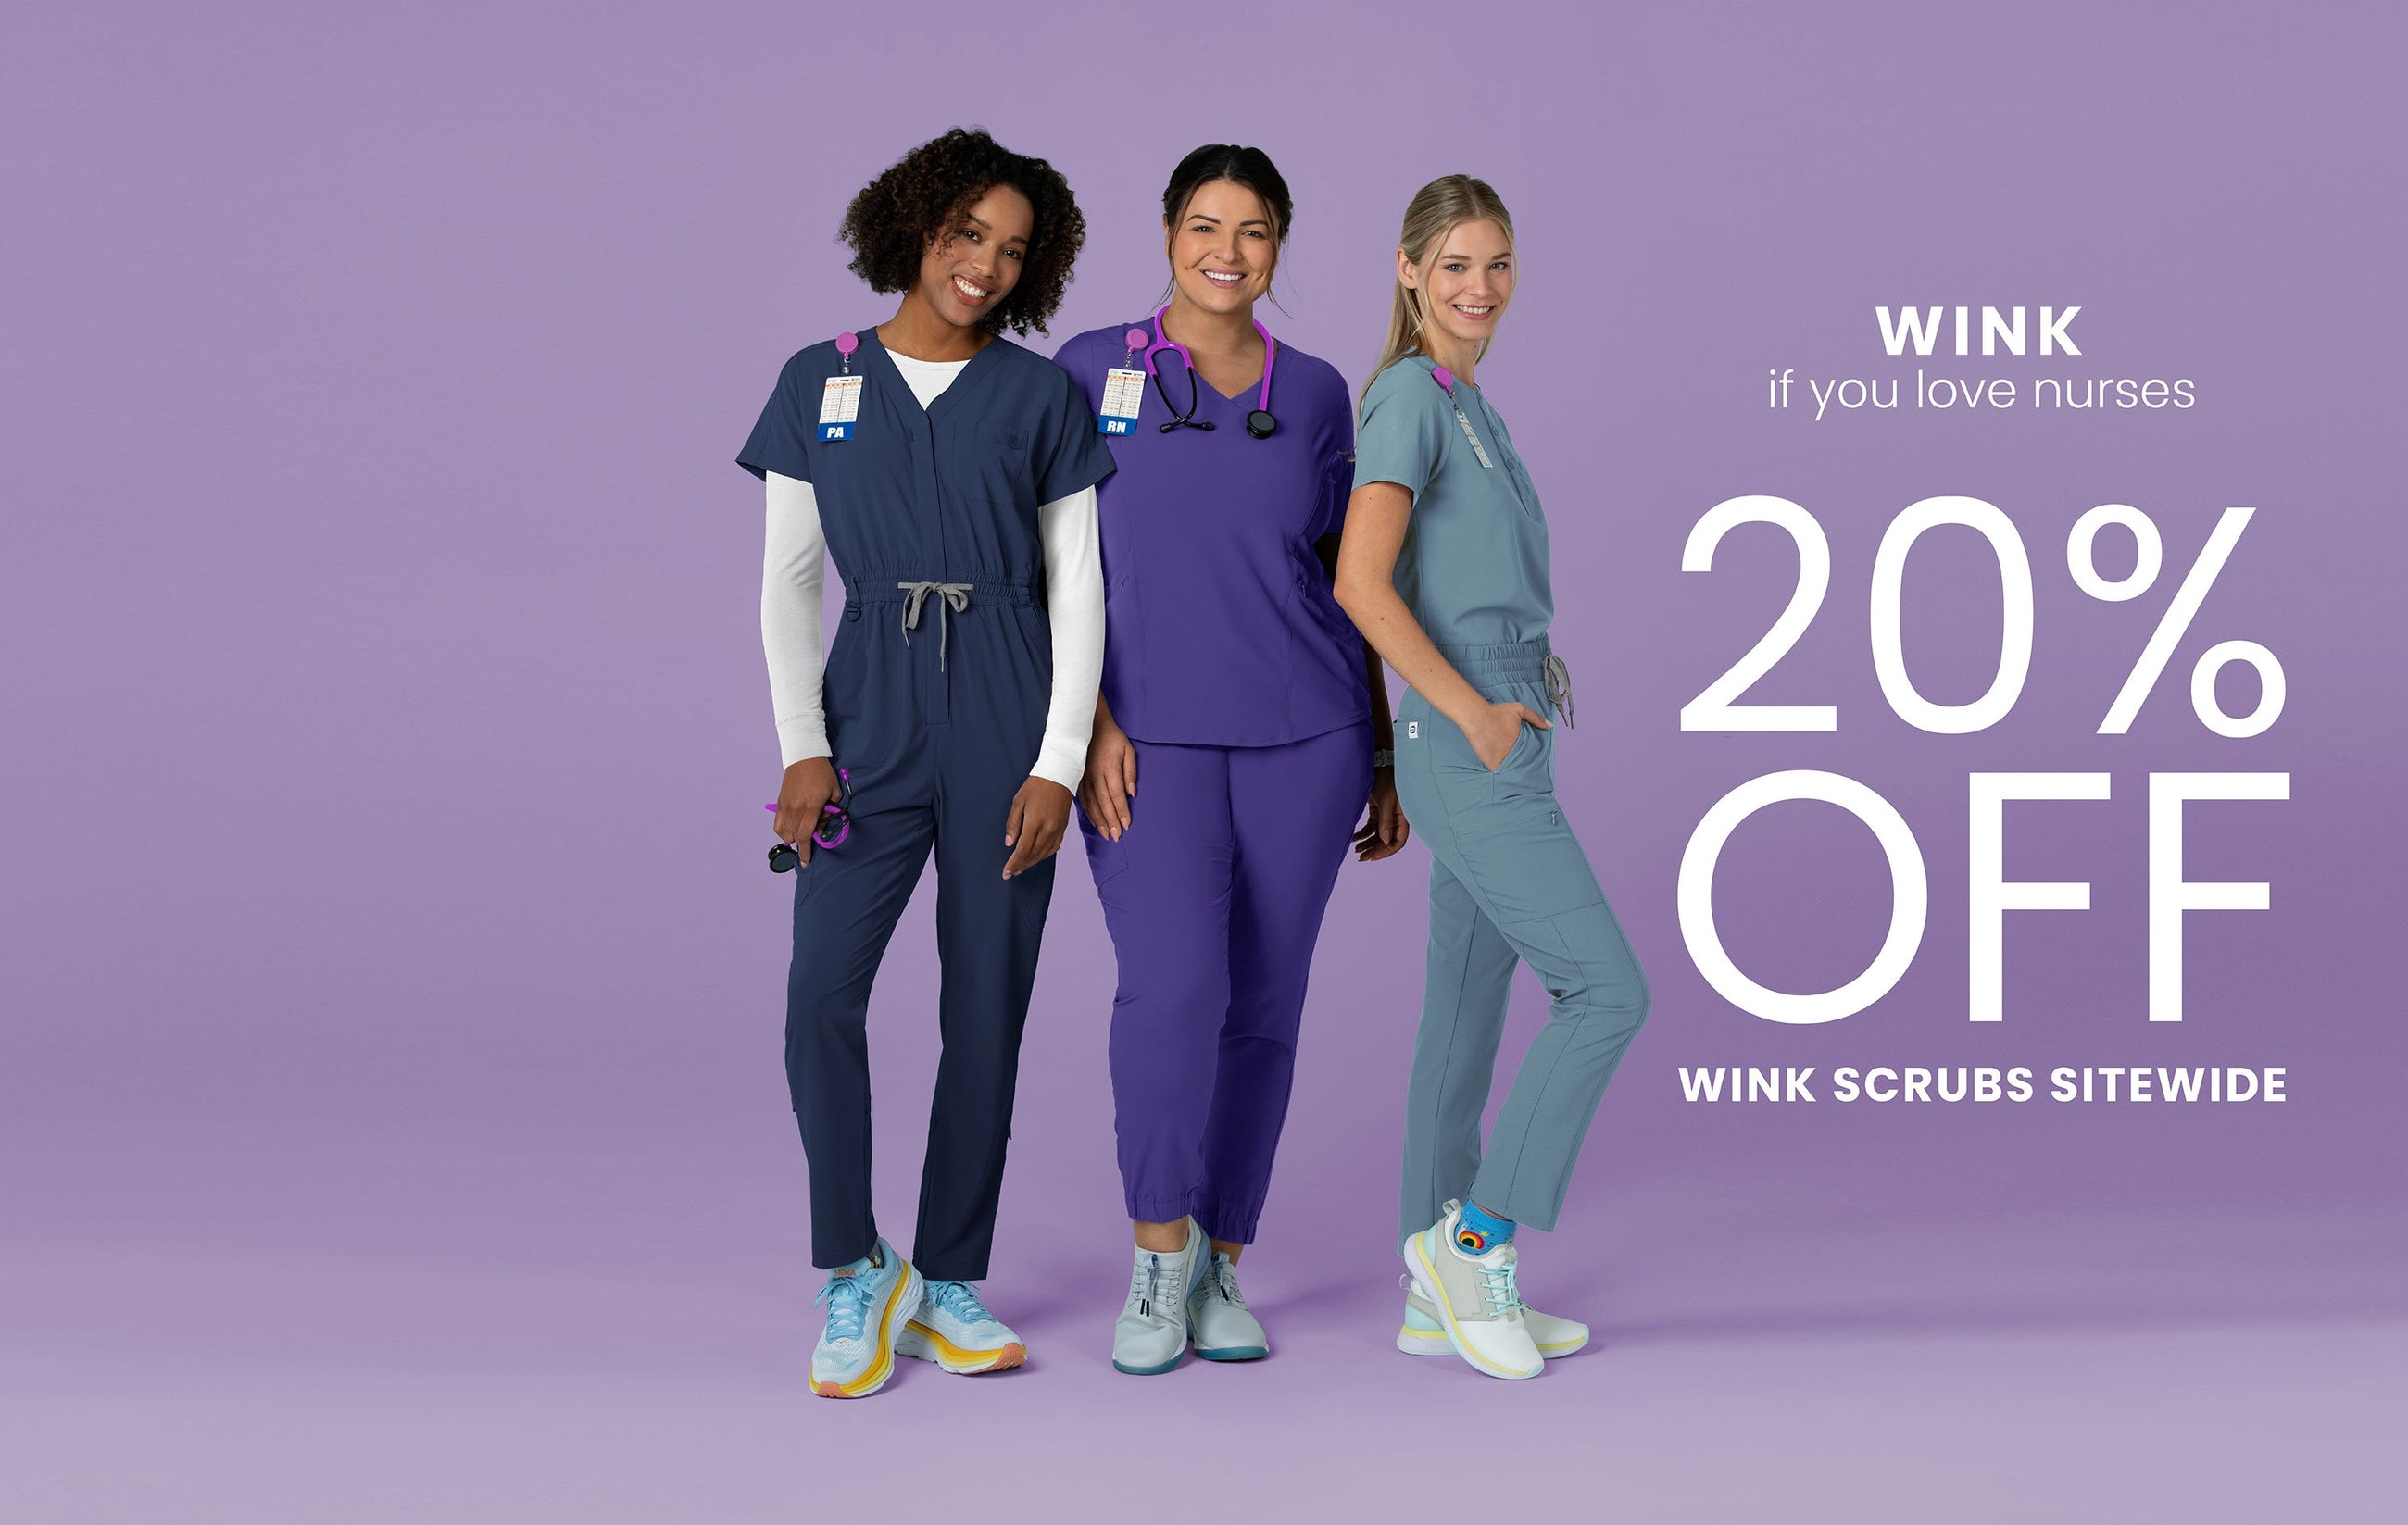 "Wink if you love nurses 20% off wink scrubs sitewide" Scrub Sales for Nurses Week